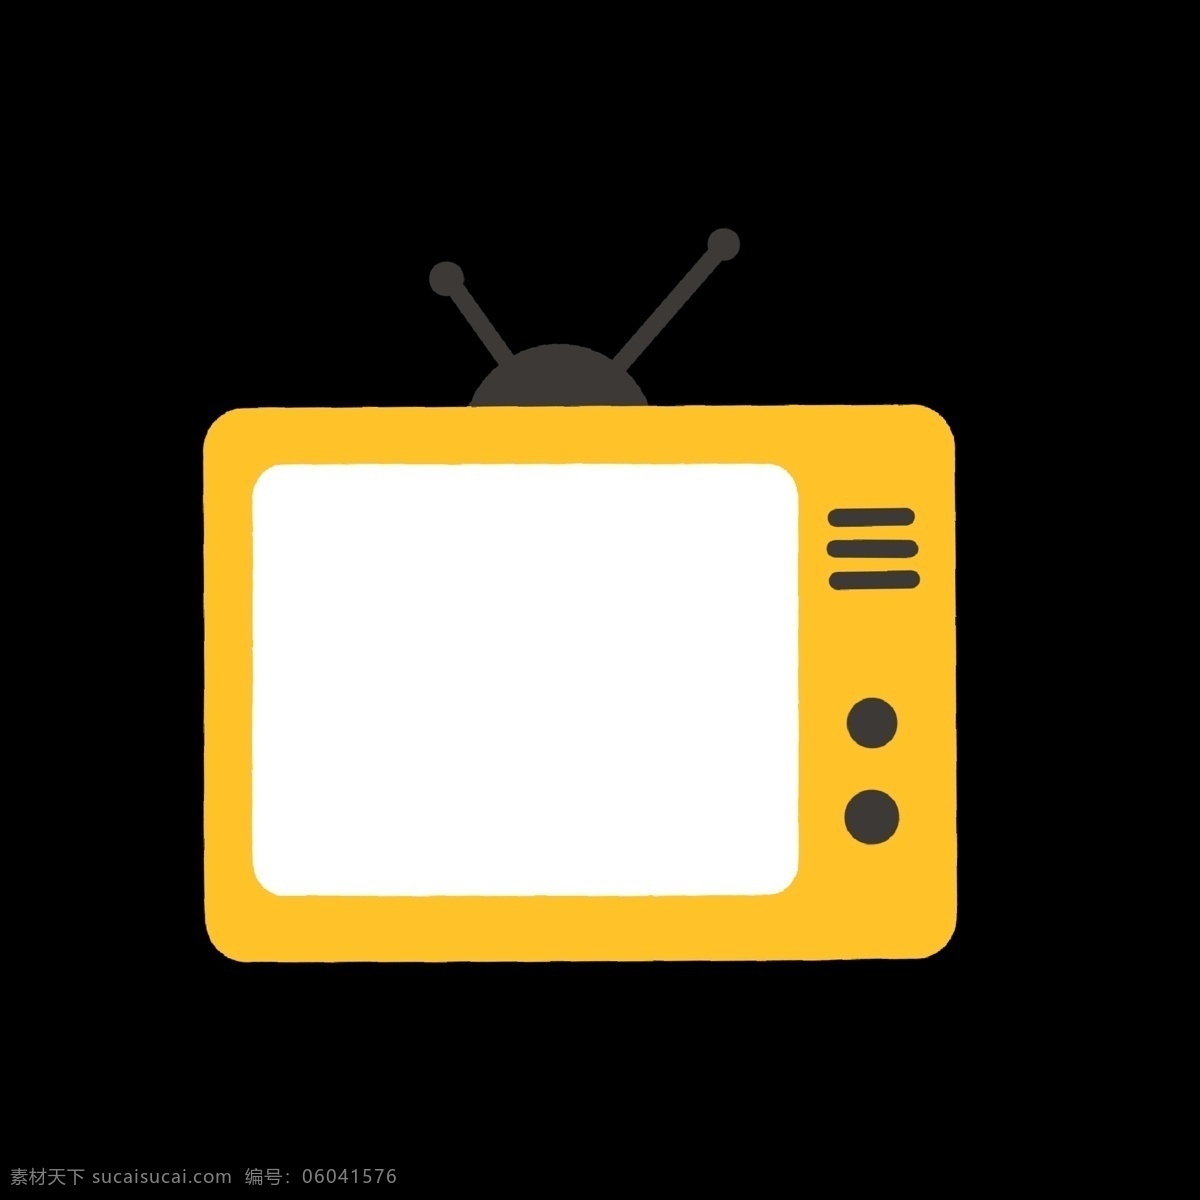 黄色 老 旧 电视机 矢量图 暖色 老旧 视频 播放进度查询 卡通 ppt可用 简洁 简约